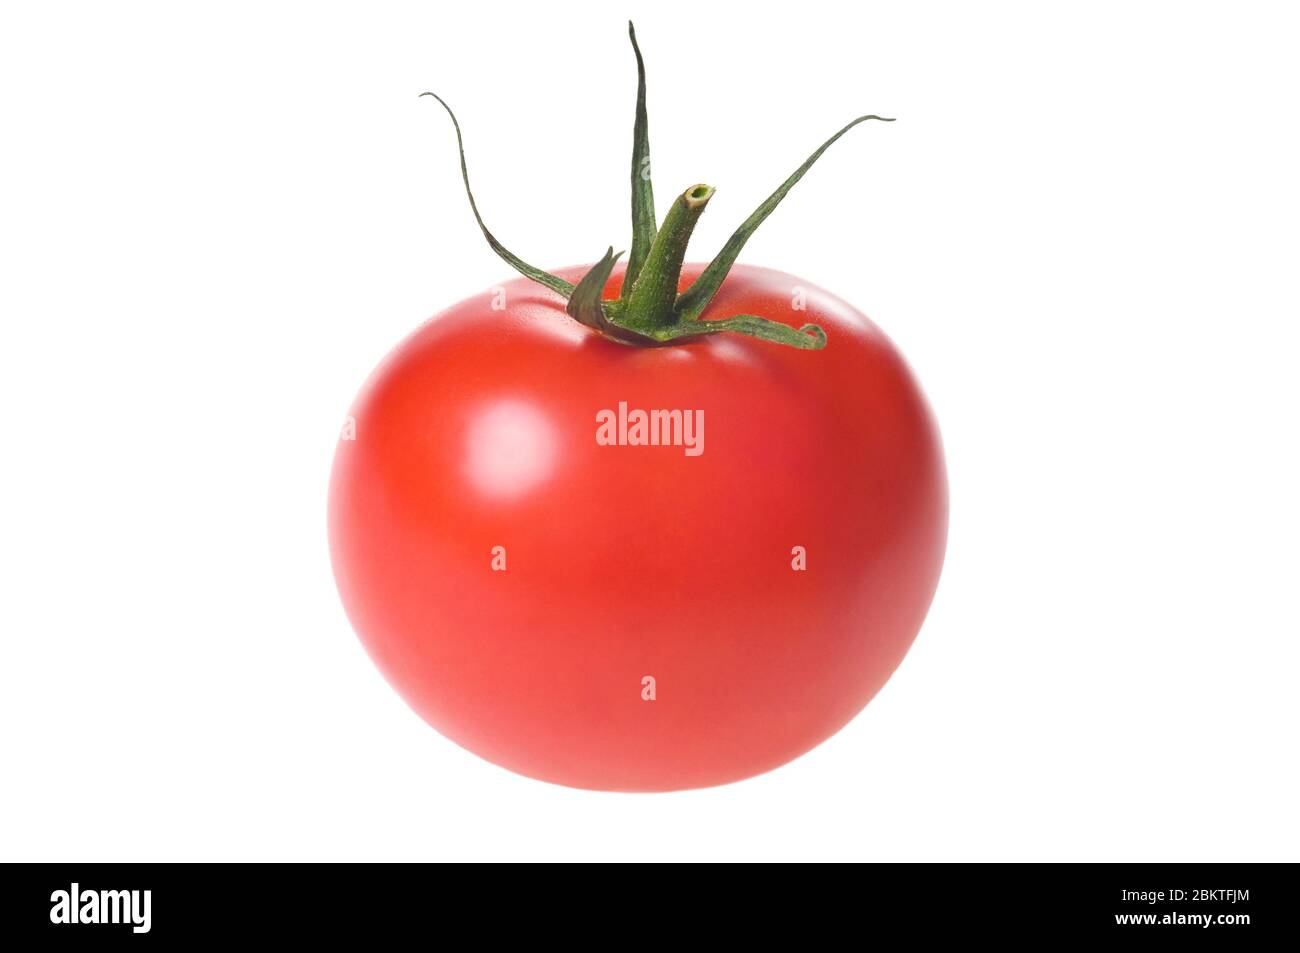 Tomate rouge mûre fraîche avec tige verte isolée sur fond blanc. Prise de vue en studio. Banque D'Images